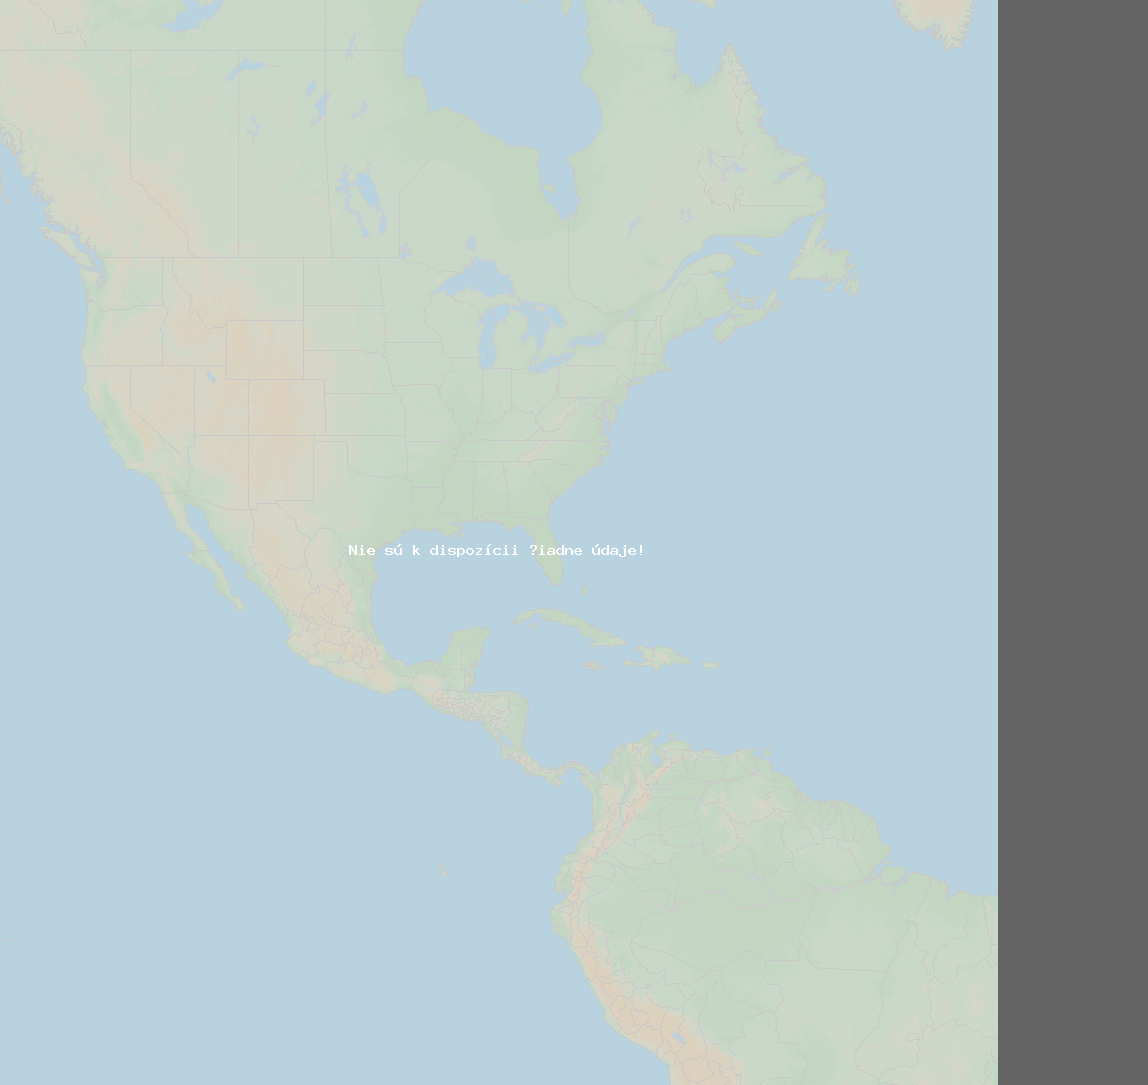 Pomer bleskov (Stanica Manic V QC) North America 2020 